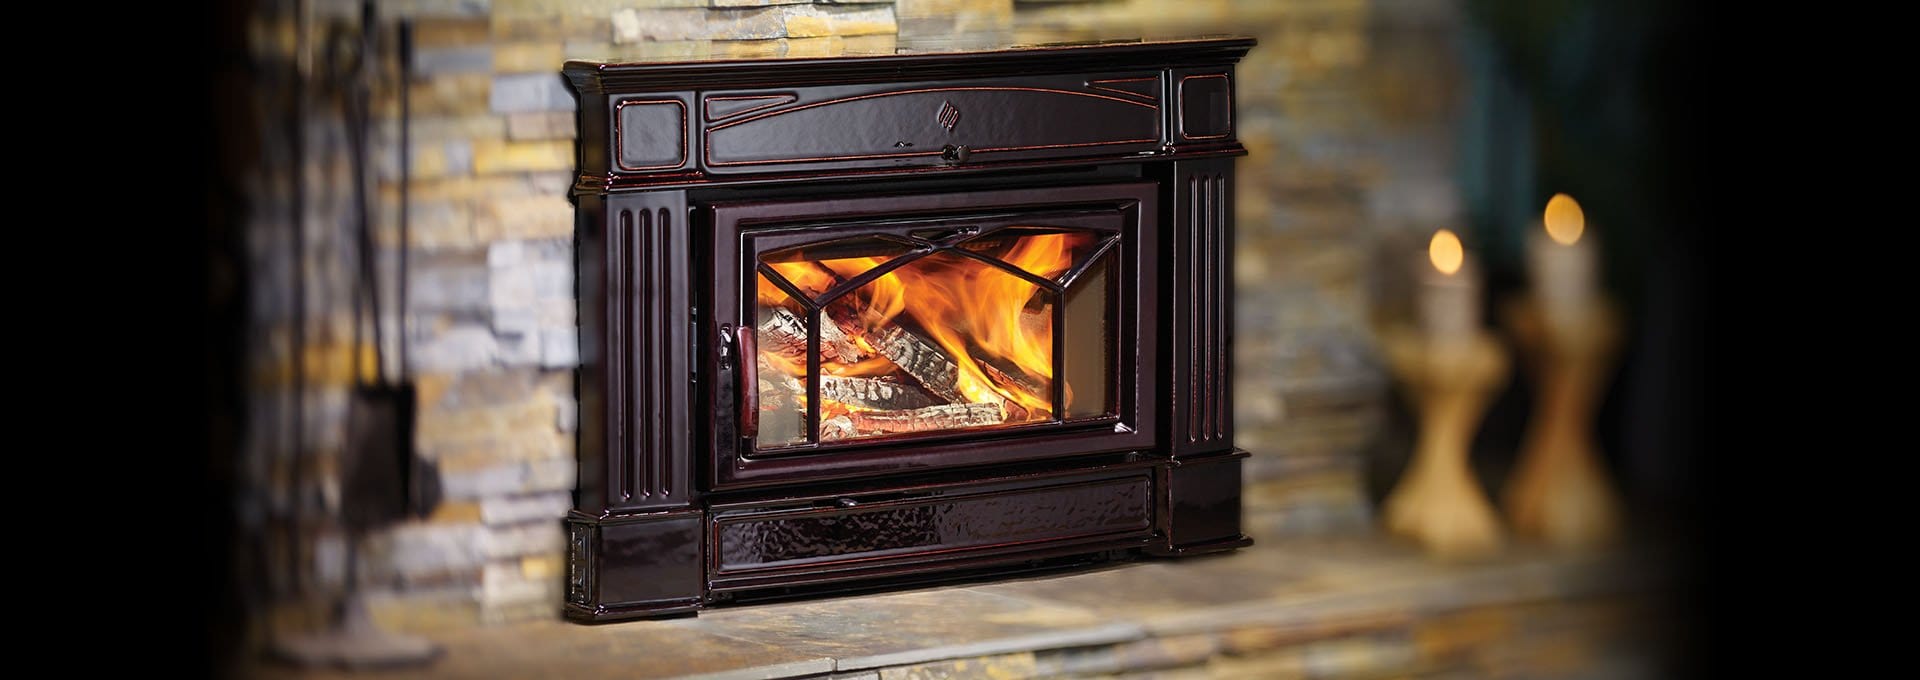 Regency Regency Hampton HI500 Wood Insert Fireplace Finished - Wood